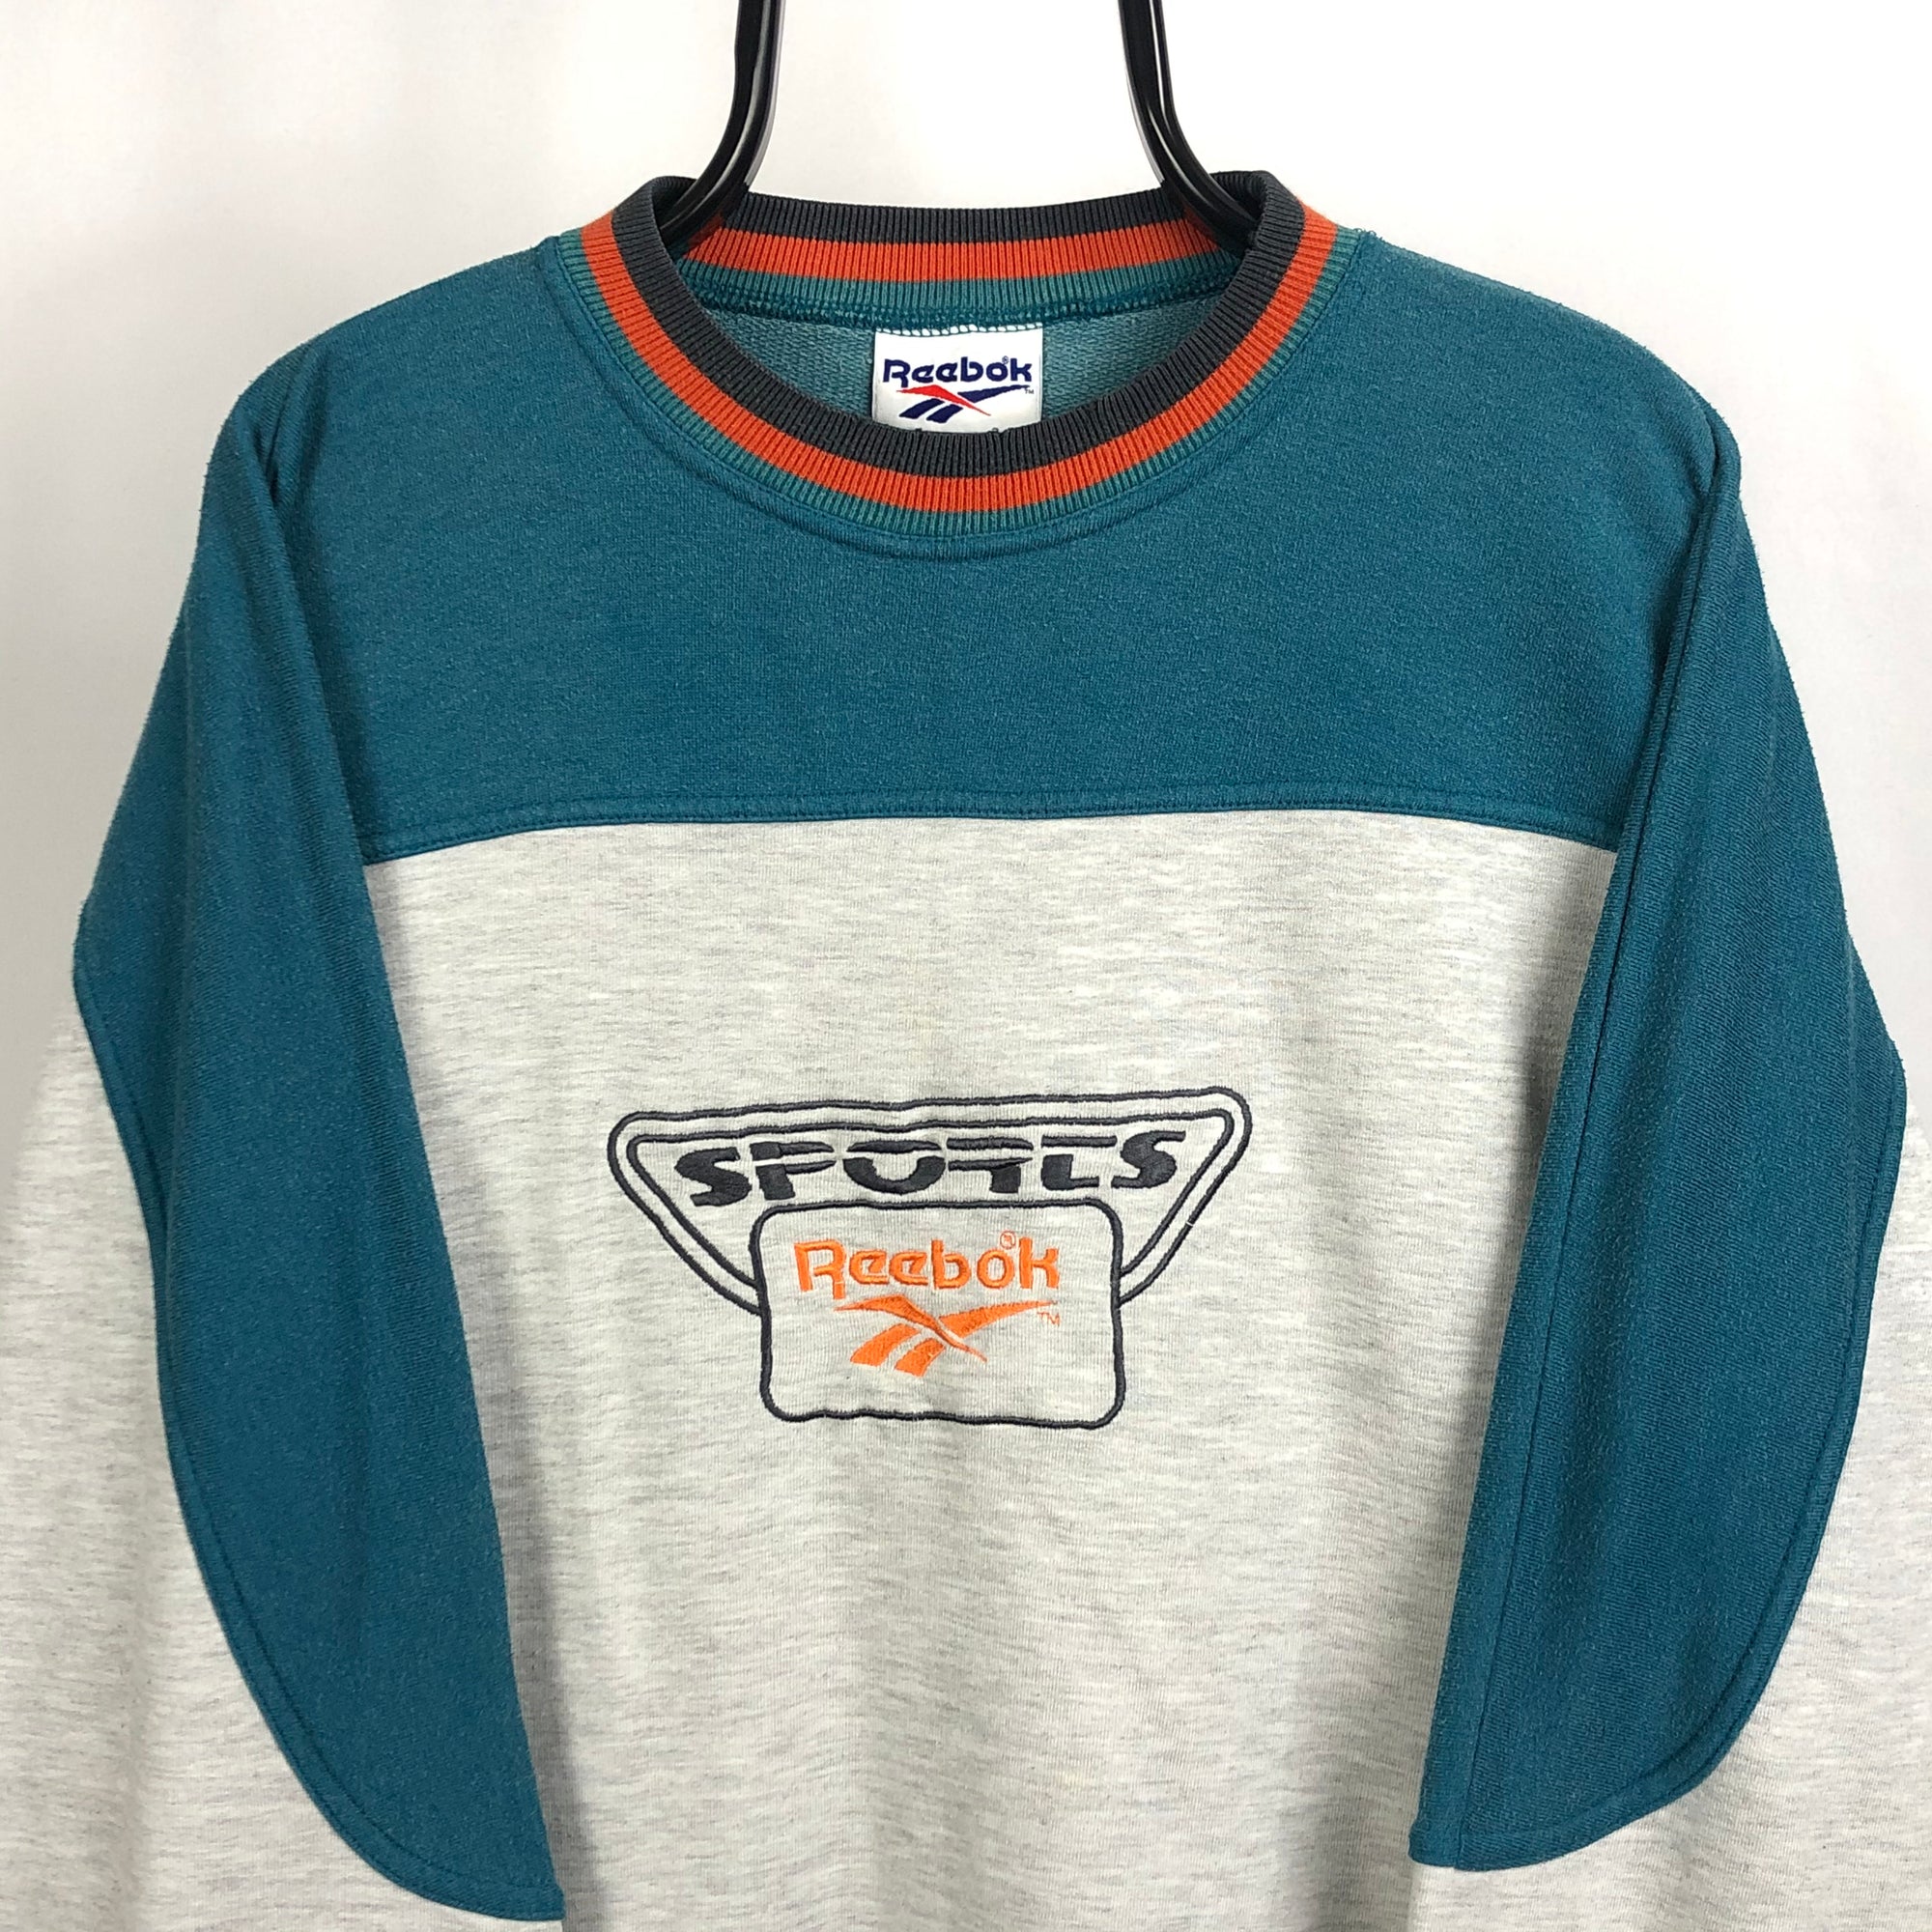 Vintage Reebok Spellout Sweatshirt in Grey/Blue/Orange - Men's Large/Women's XL